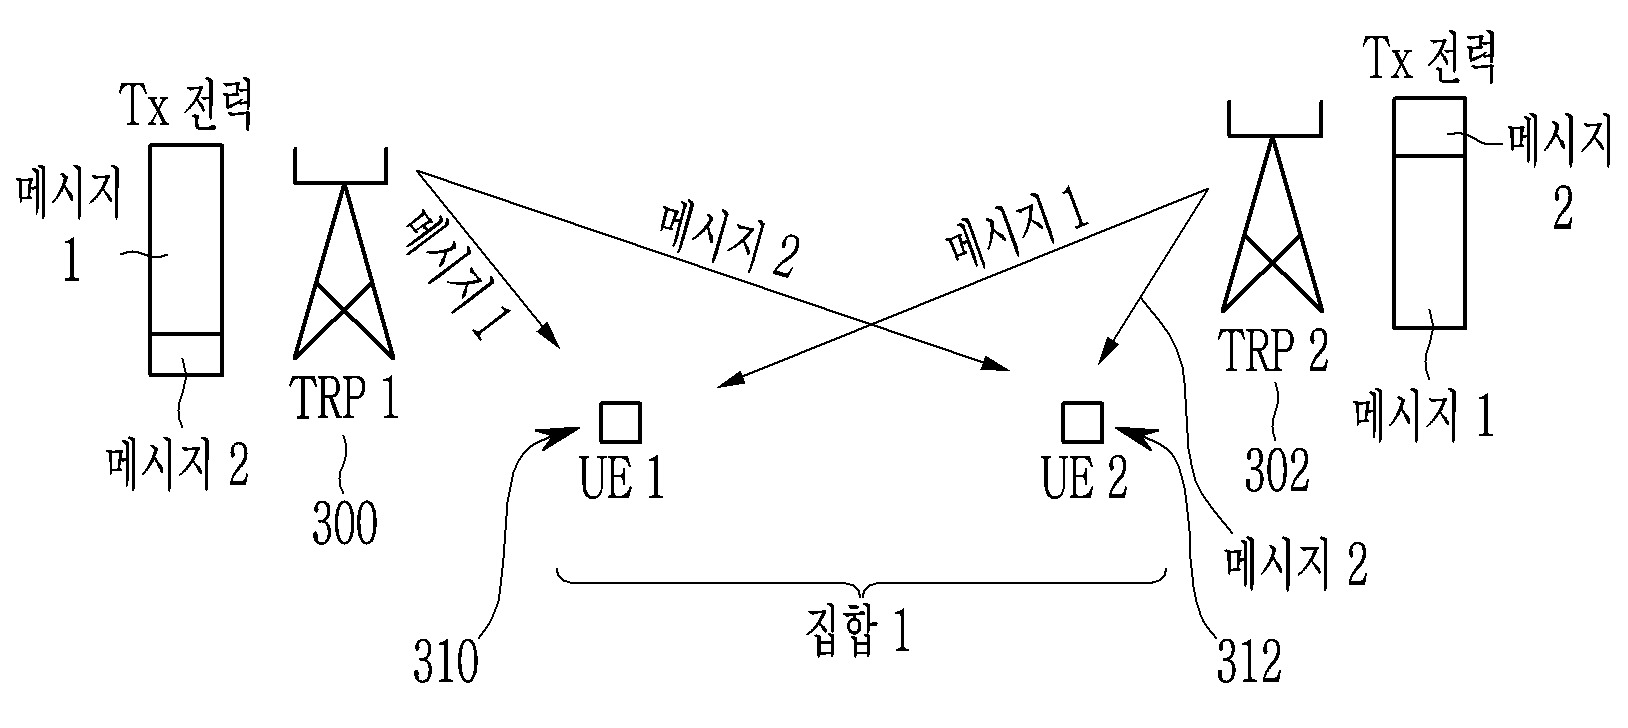 NETCONF 기반의 네트워크 시스템 명령어를 YANG 언어로 모델링하는 방법 및 장치